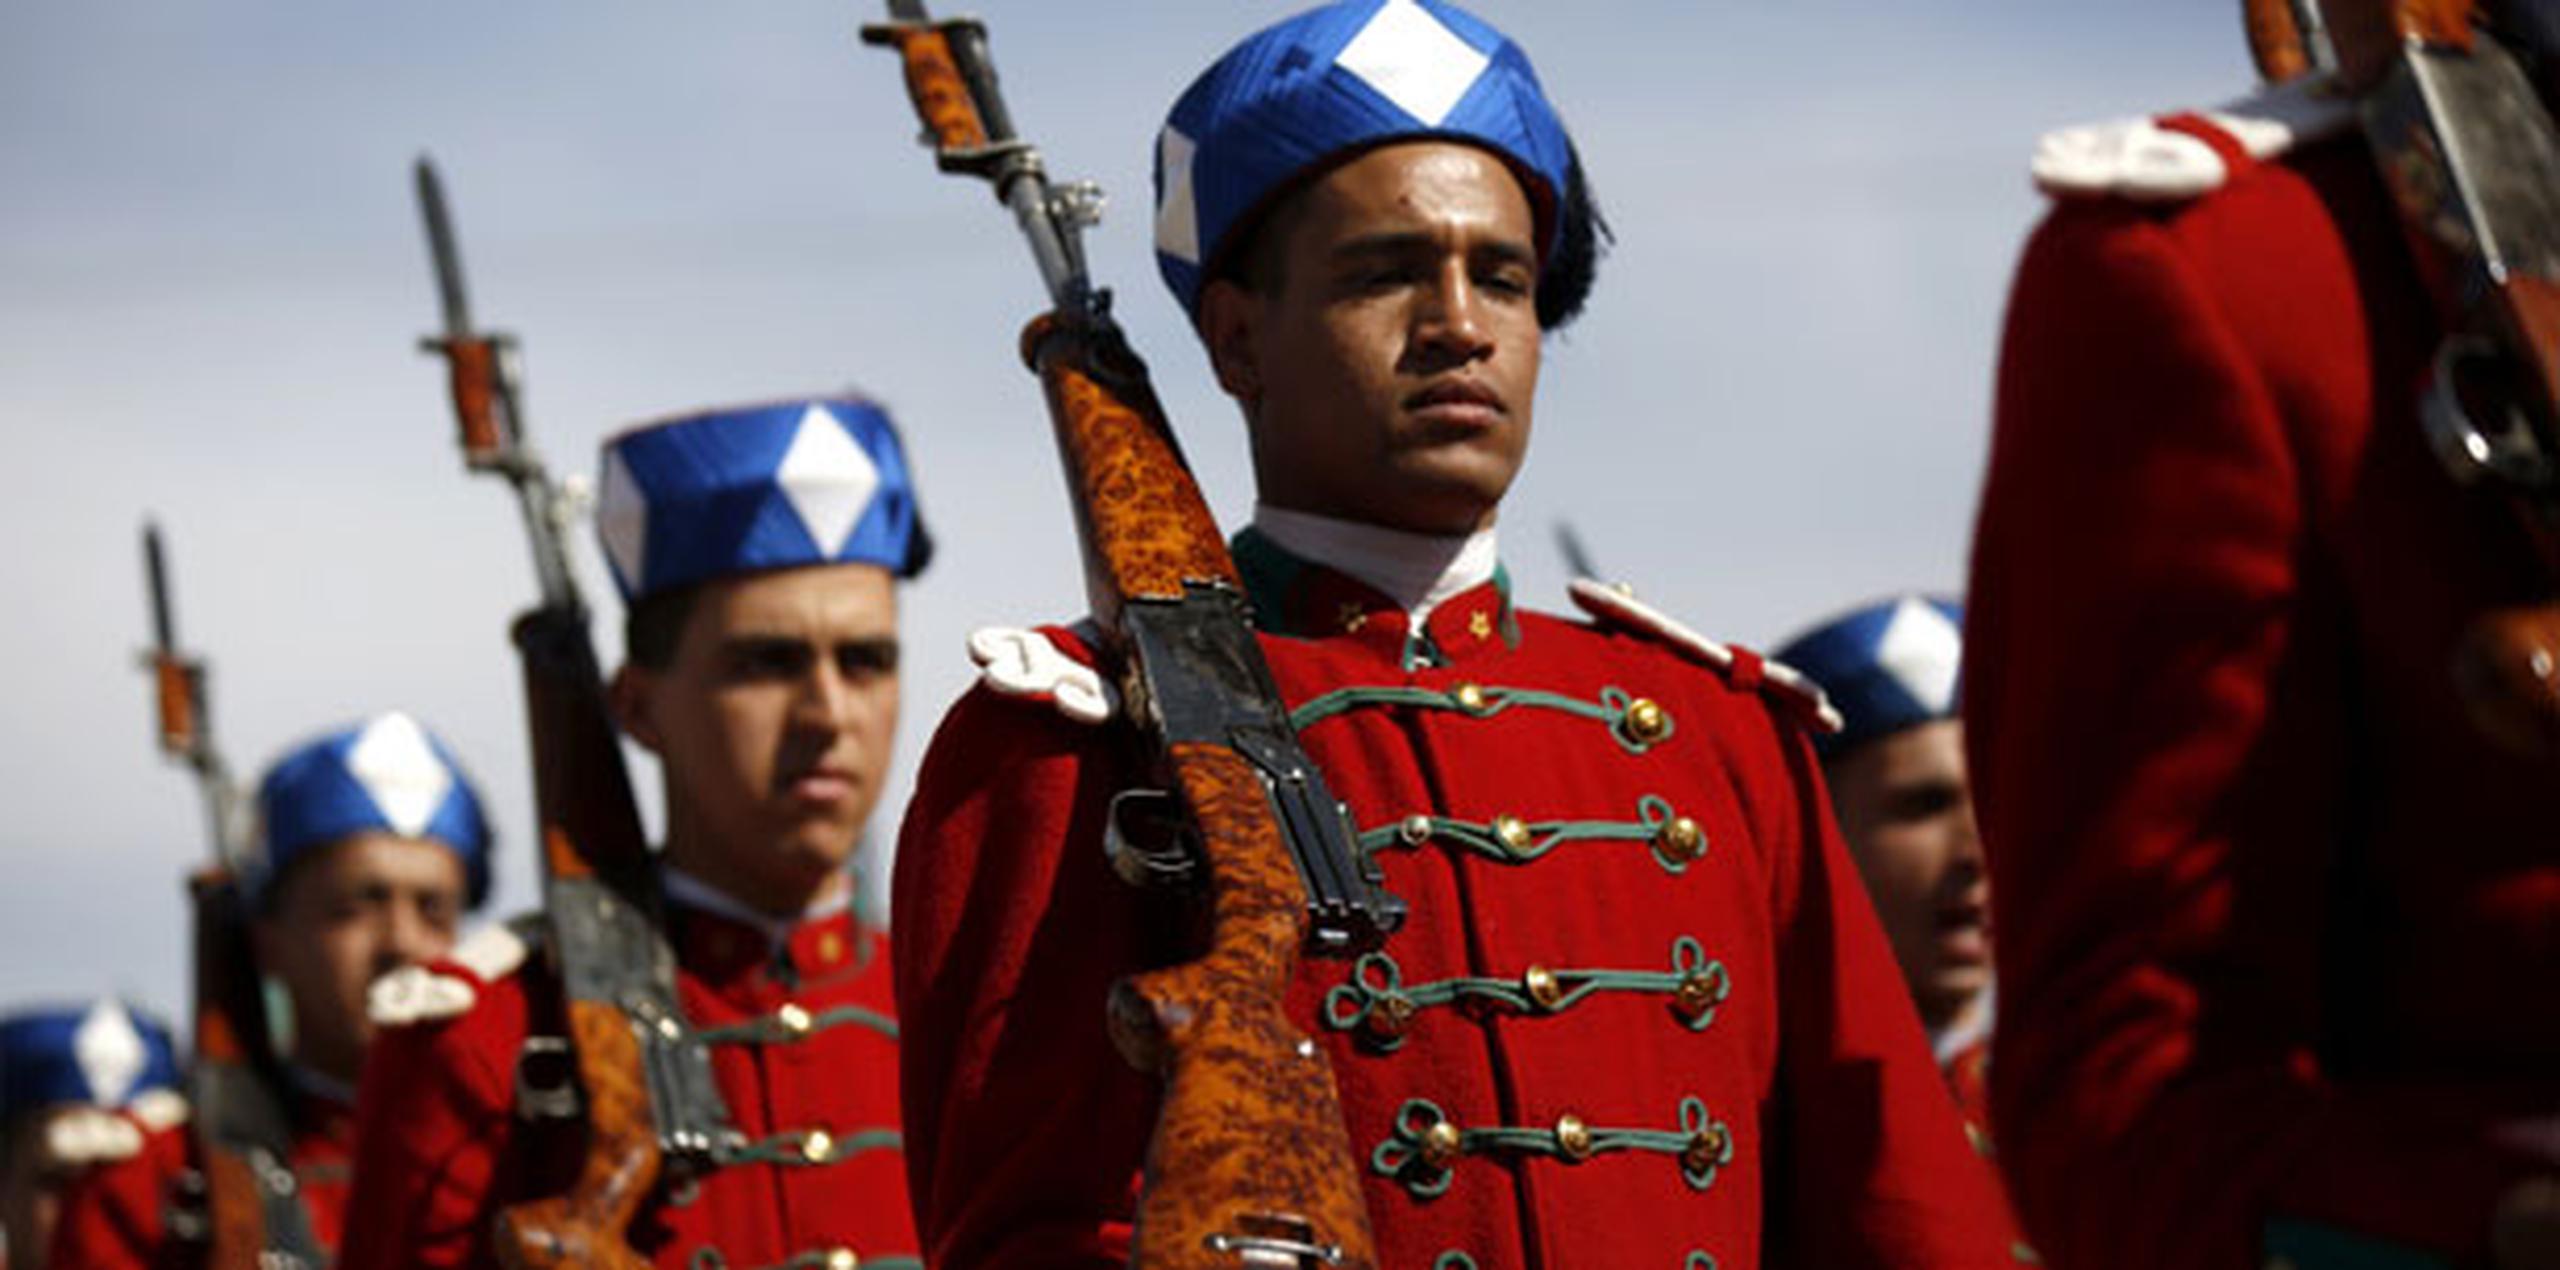 Actualmente el Ejército marroquí cuenta con 198,000 hombres en activo y supone para el Estado un gasto de 3,400 millones de dólares, según los datos del estudio internacional sobre poderío militar Global Firepower. (EFE)